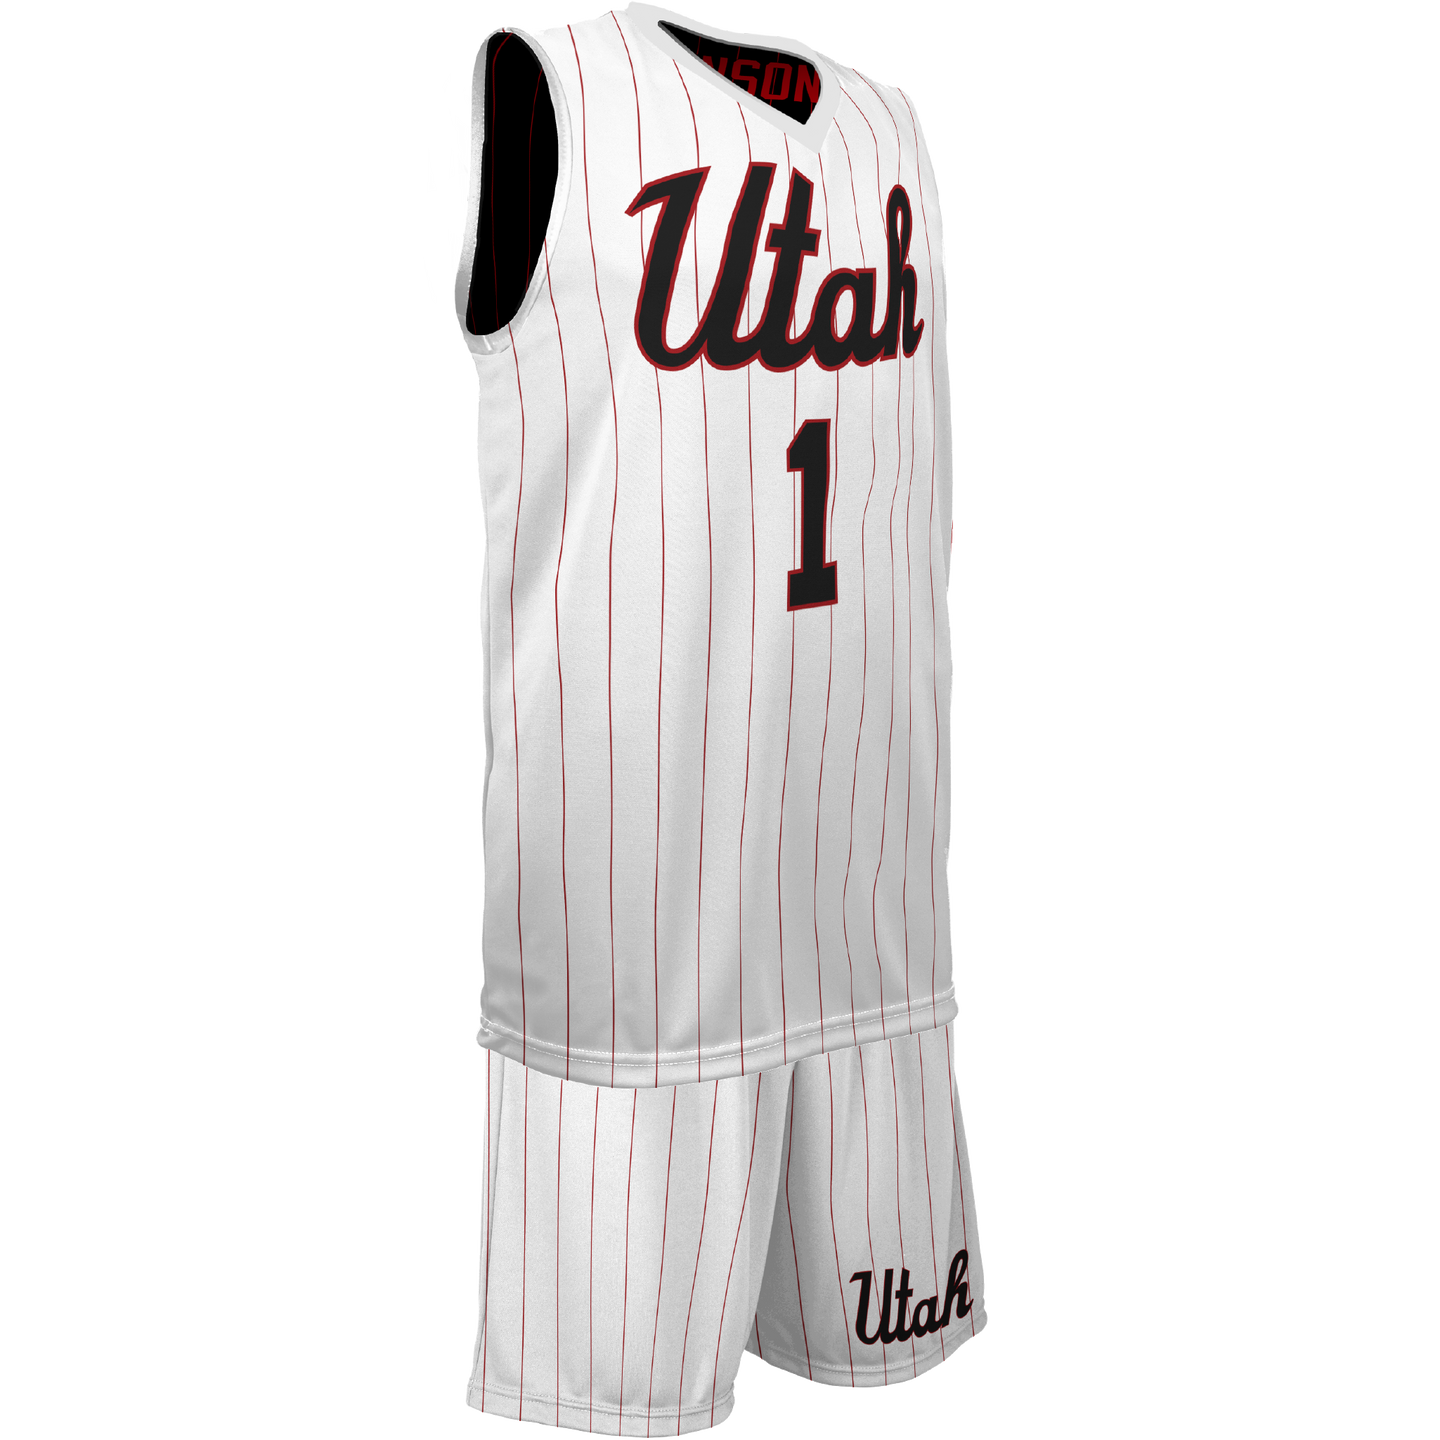 Youth Team Utah Reversible Game Uniform